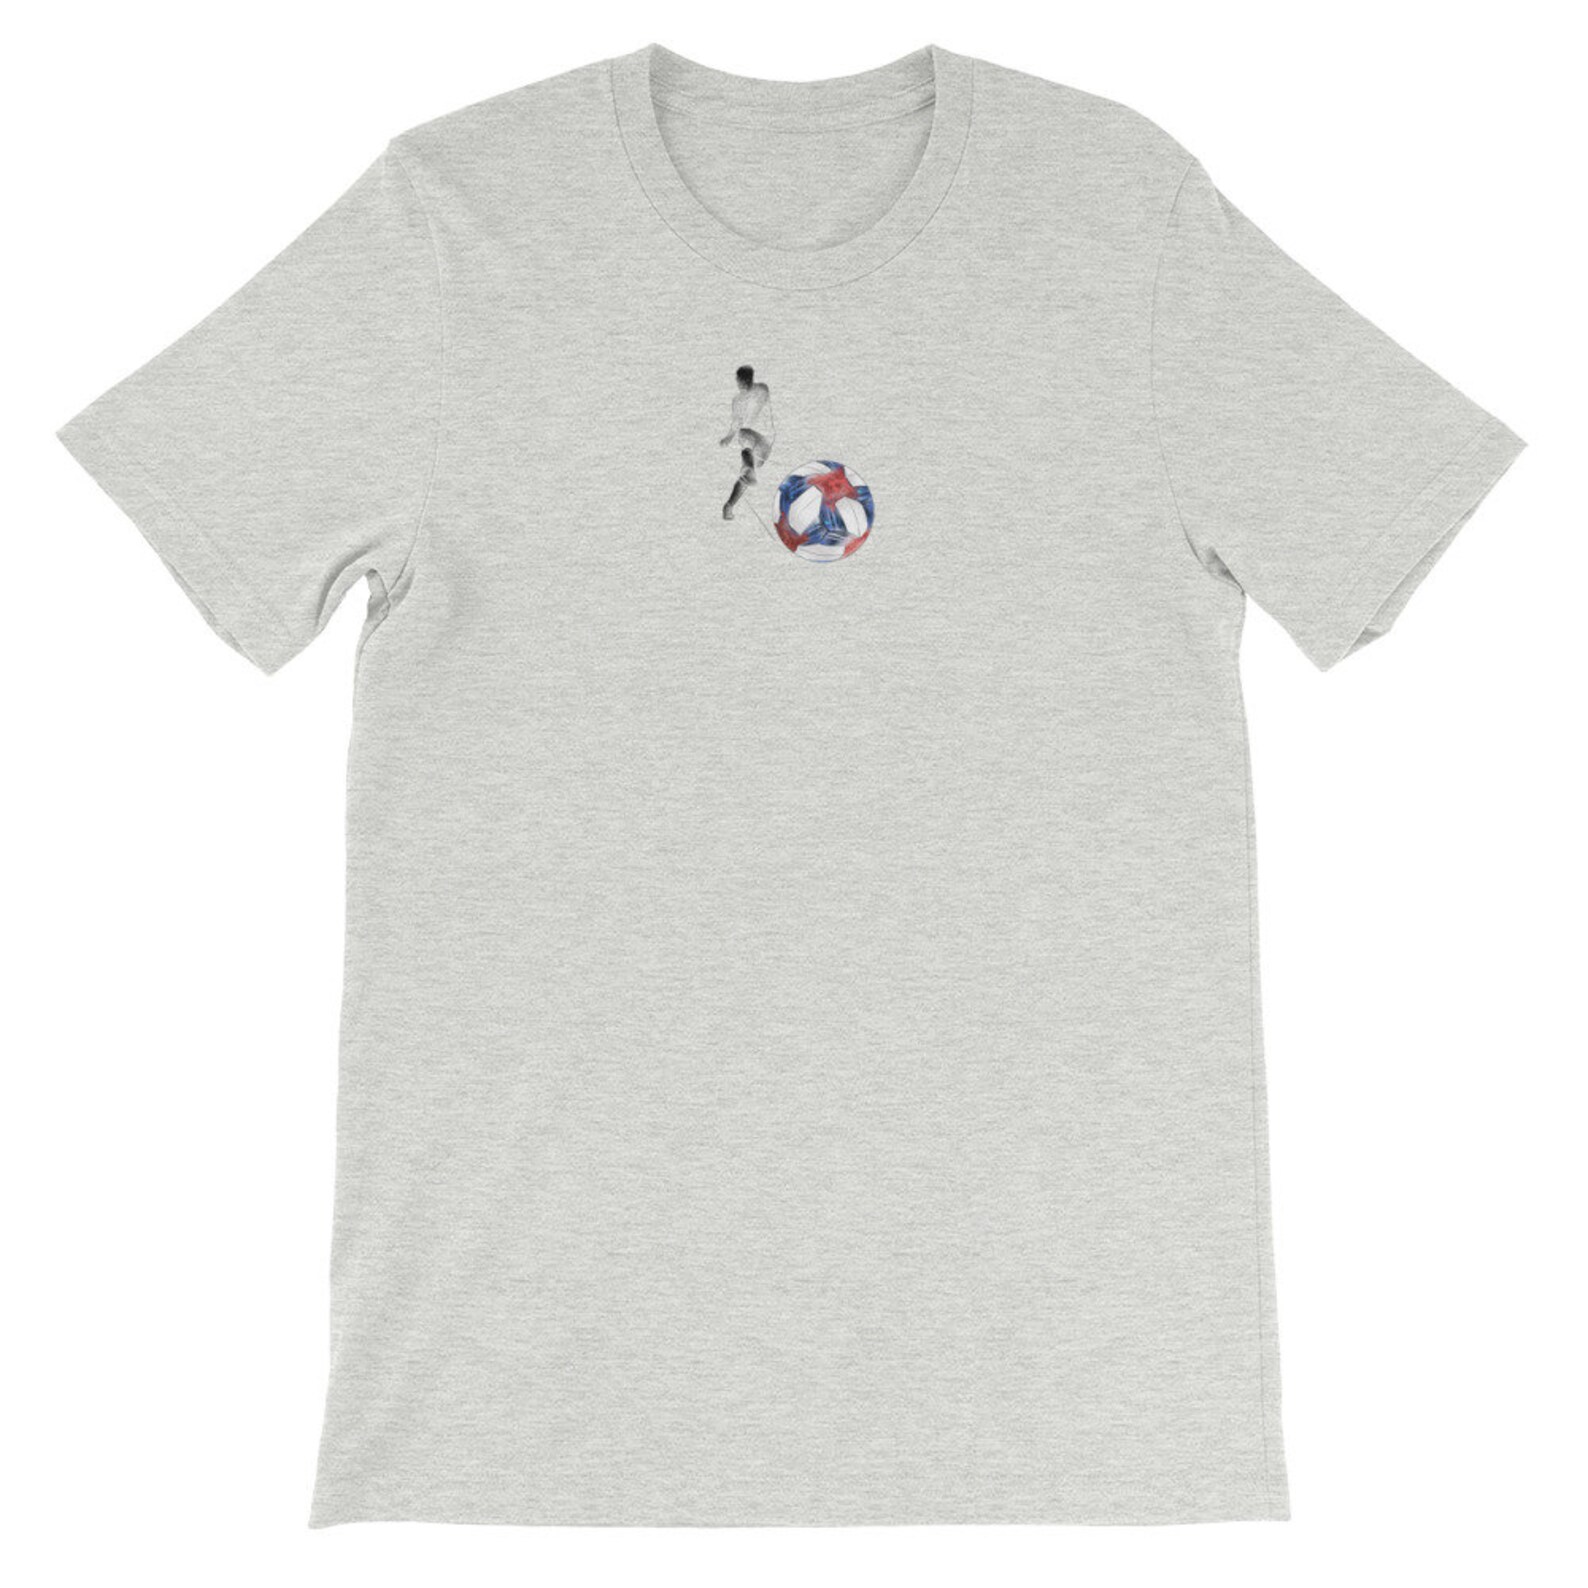 Soccer / Futbol Player T-shirt for Men and Women 100% - Etsy